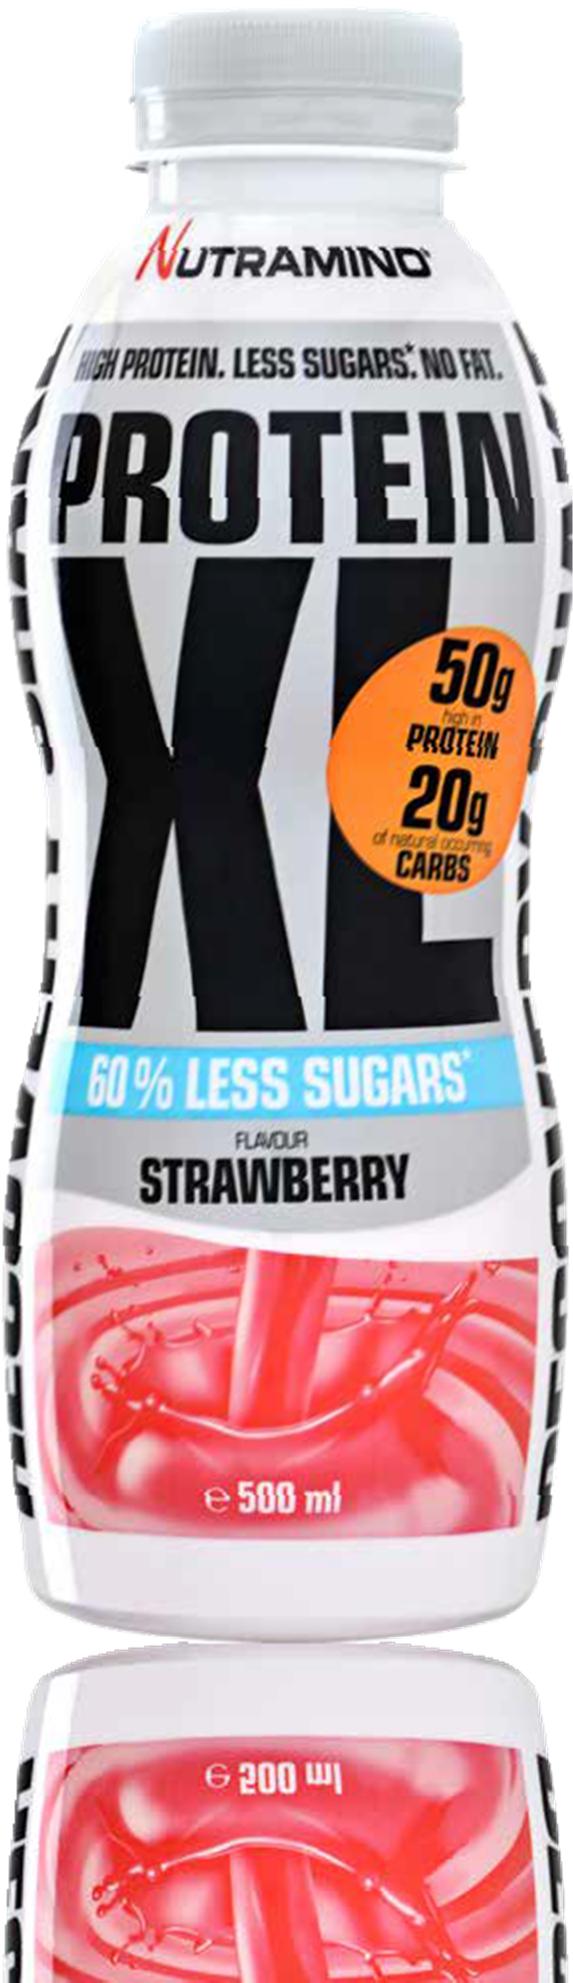 PROTEIN XL SHAKE LESS SUGARS STRAWBERRY 500 ml Nutramino XL Less Sugars Shake on suunniteltu vastaamaan kovan intensiteetin harjoittelun vaatimuksia.